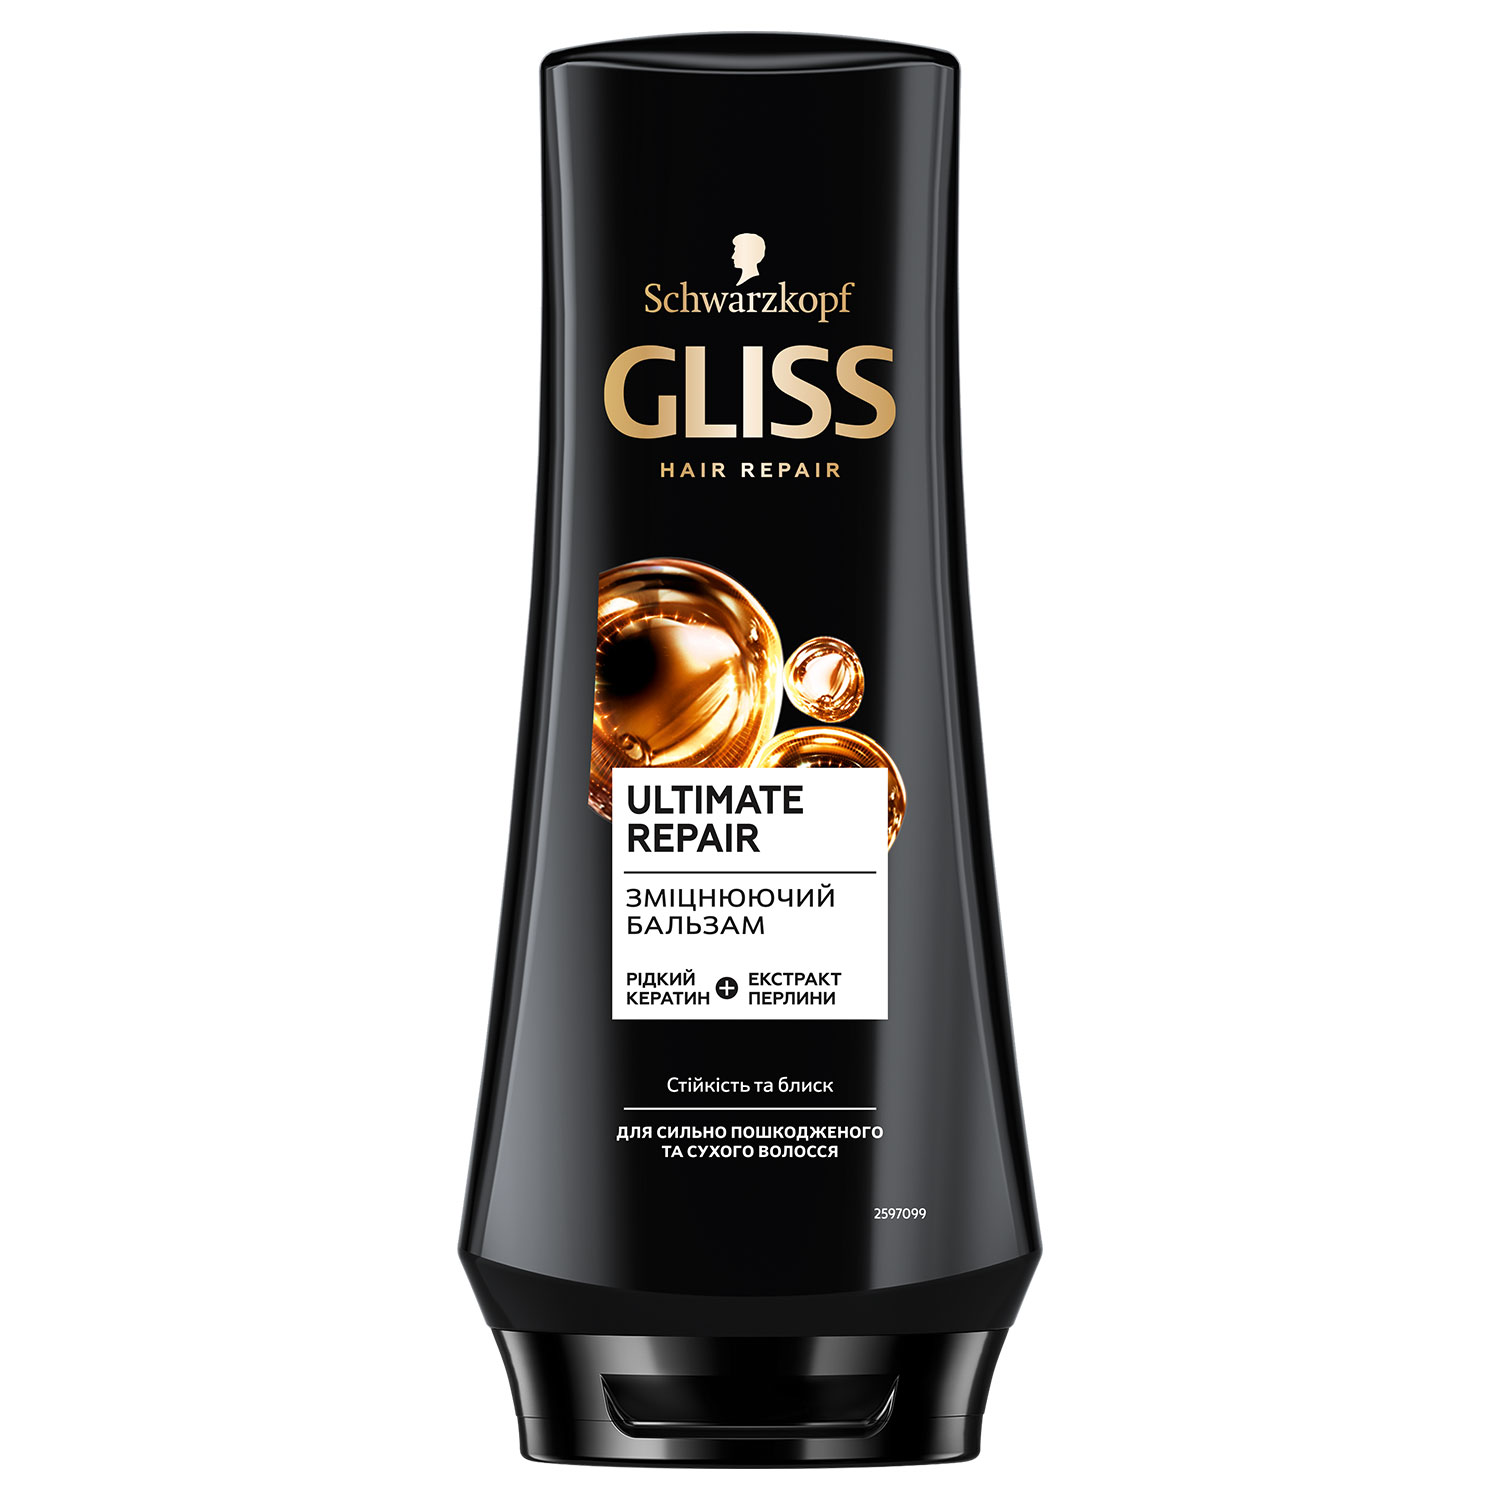 Зміцнюючий бальзам GLISS Ultimate Repair для сильно пошкодженого та сухого волосся 200 мл